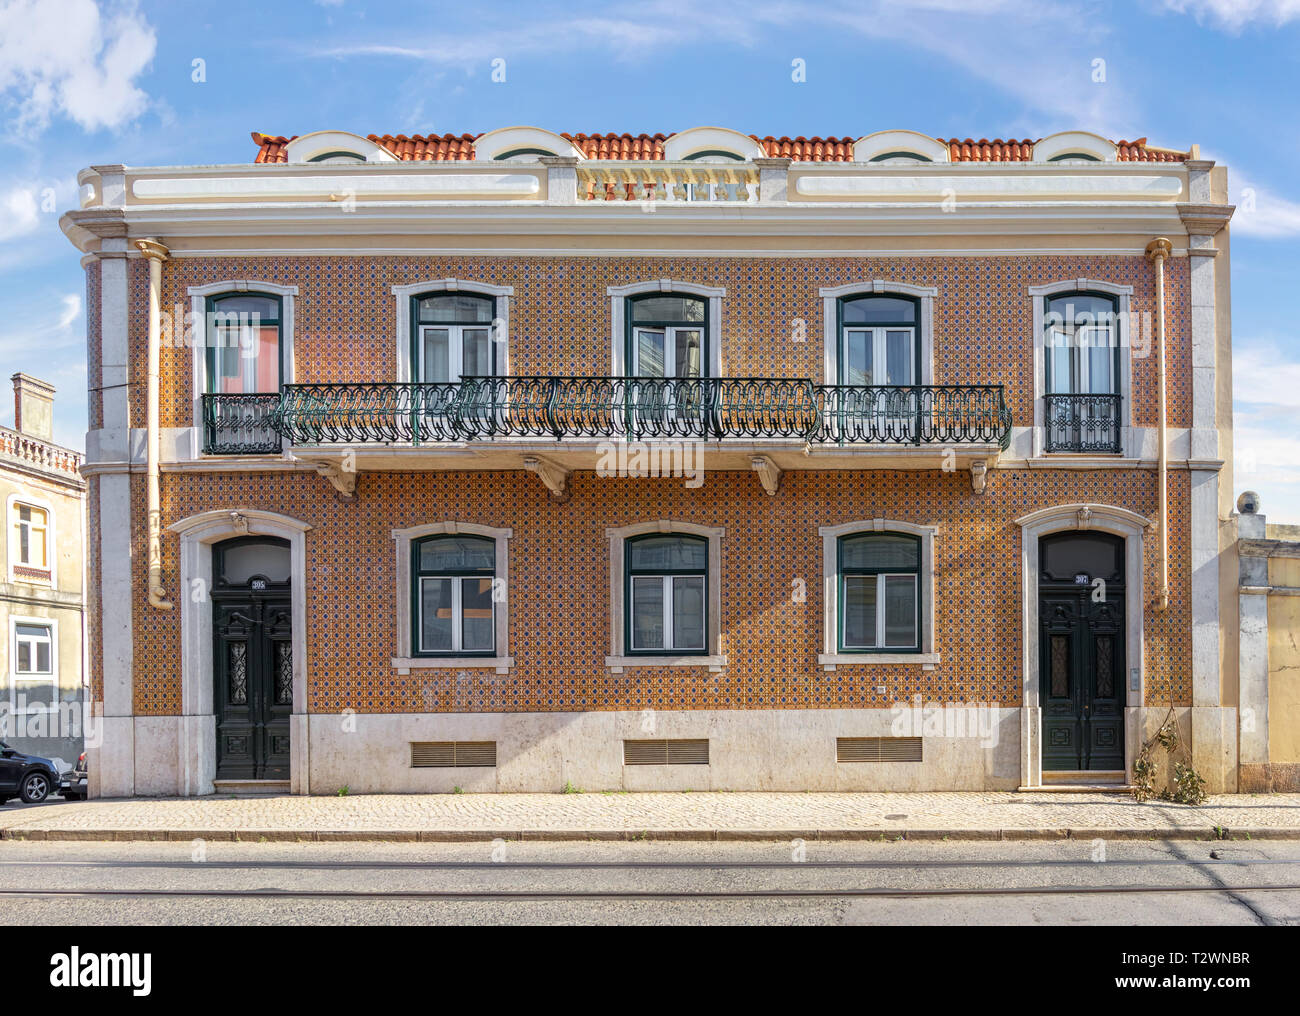 Bâtiment résidentiel à Belem avec de beaux balcons en fer forgé et décoré avec des carreaux azulejo. Lisbonne, Portugal Banque D'Images